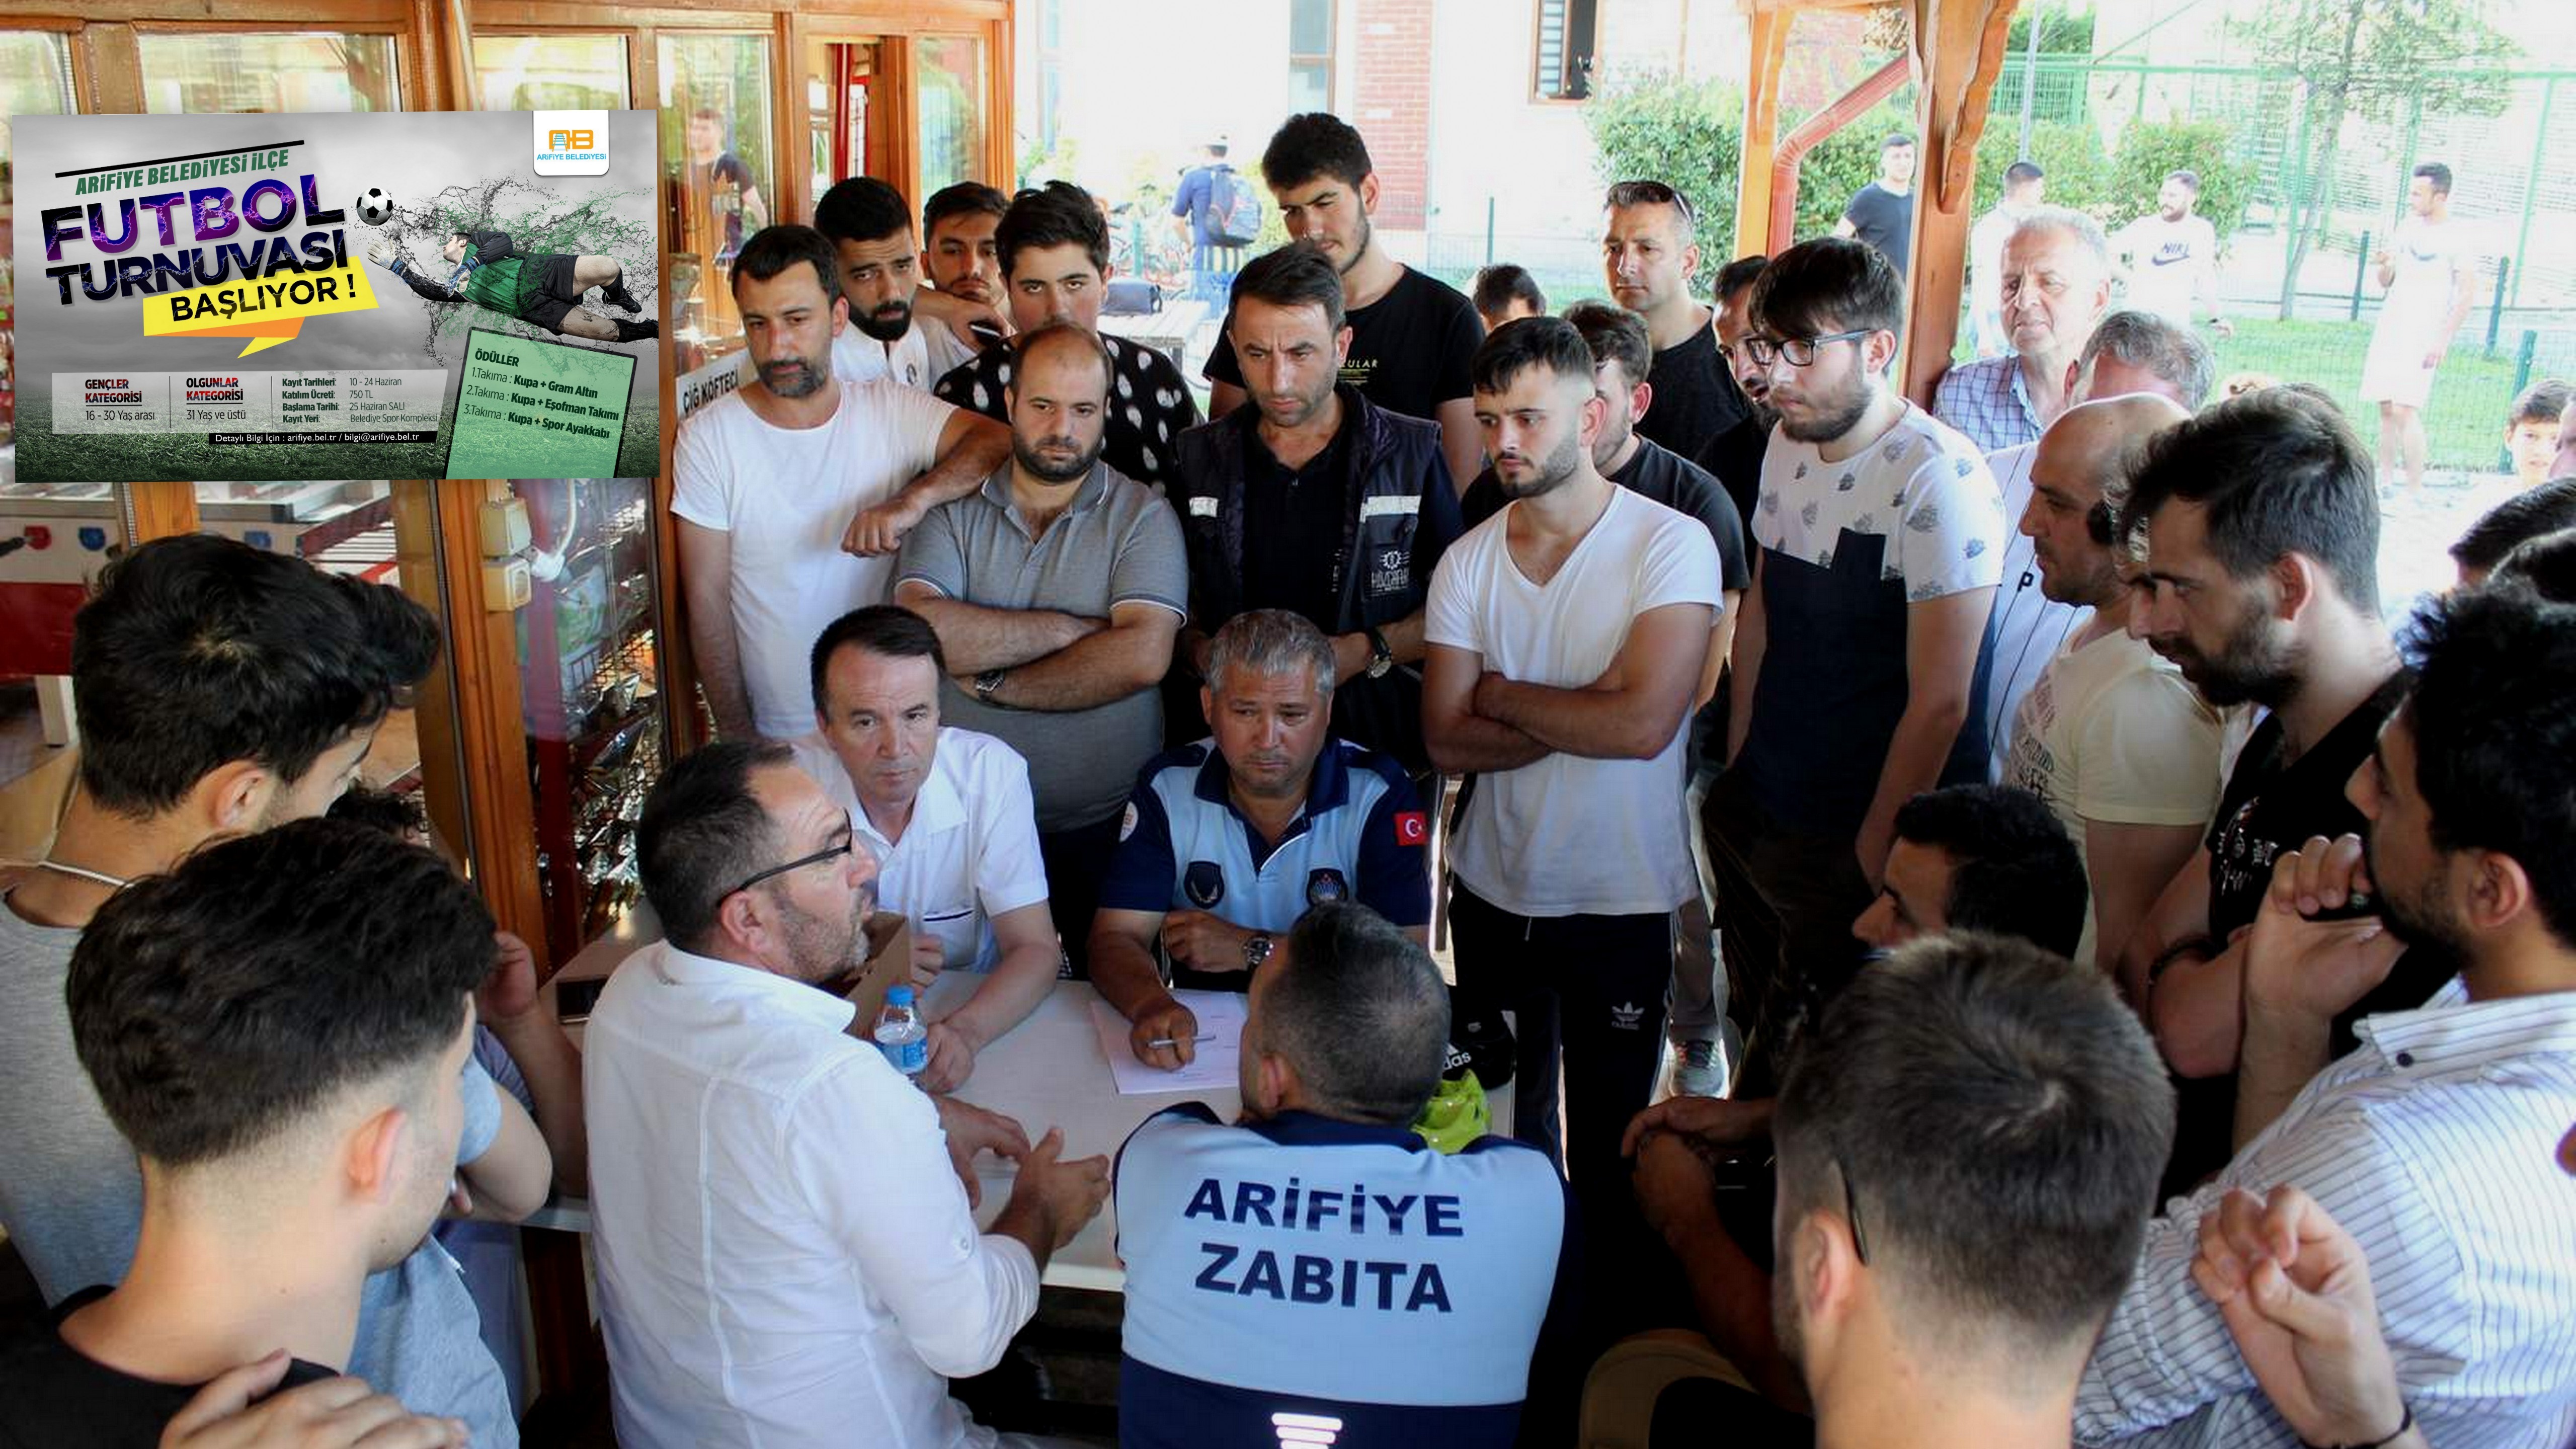 Arifiye Belediyesi İlçe Futbol Turnuvasında kuralar çekildi.